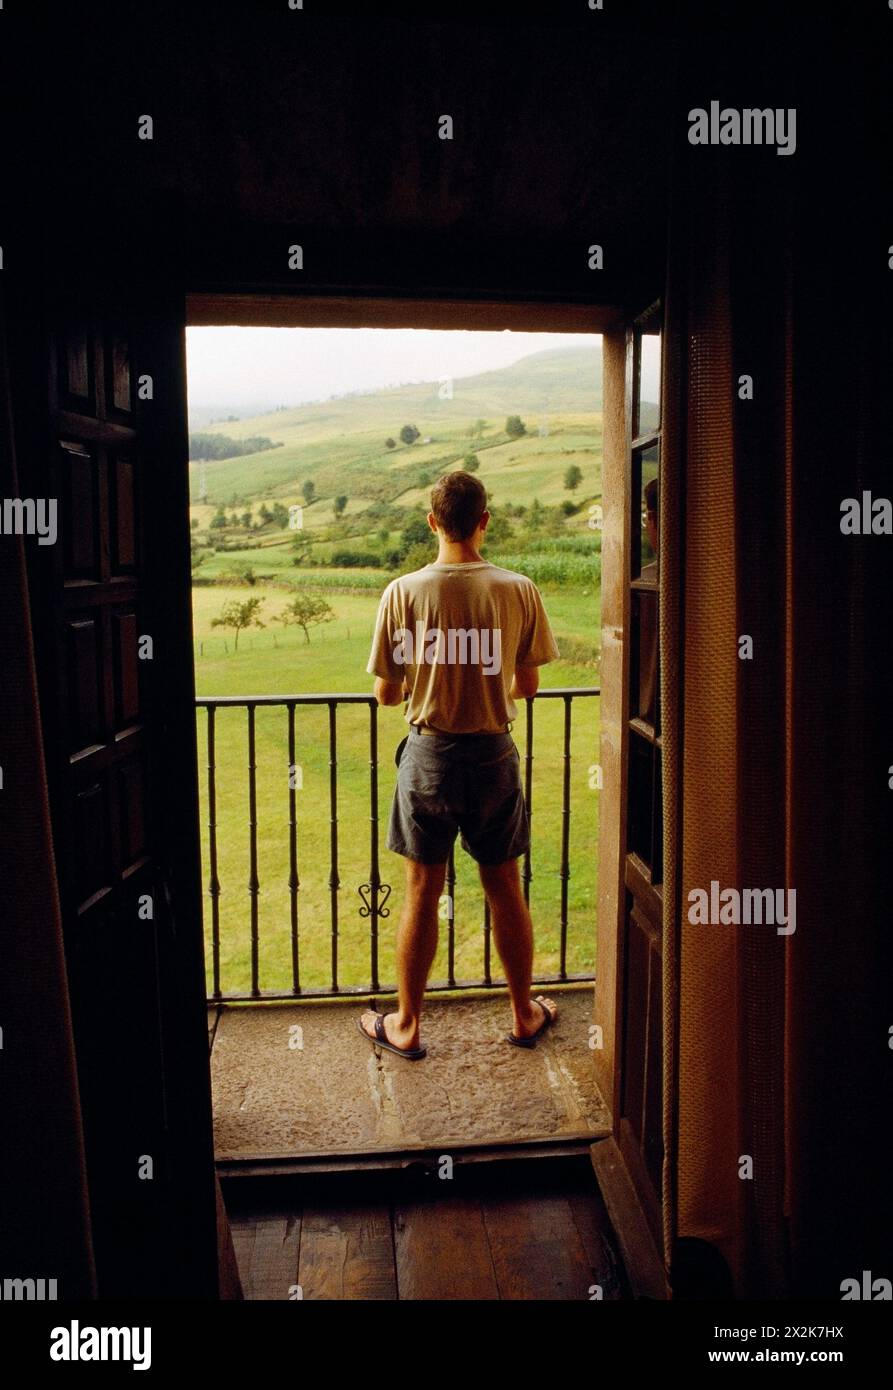 Homme à la fenêtre, regardant le paysage. Carmona, Cantabrie, Espagne. Banque D'Images